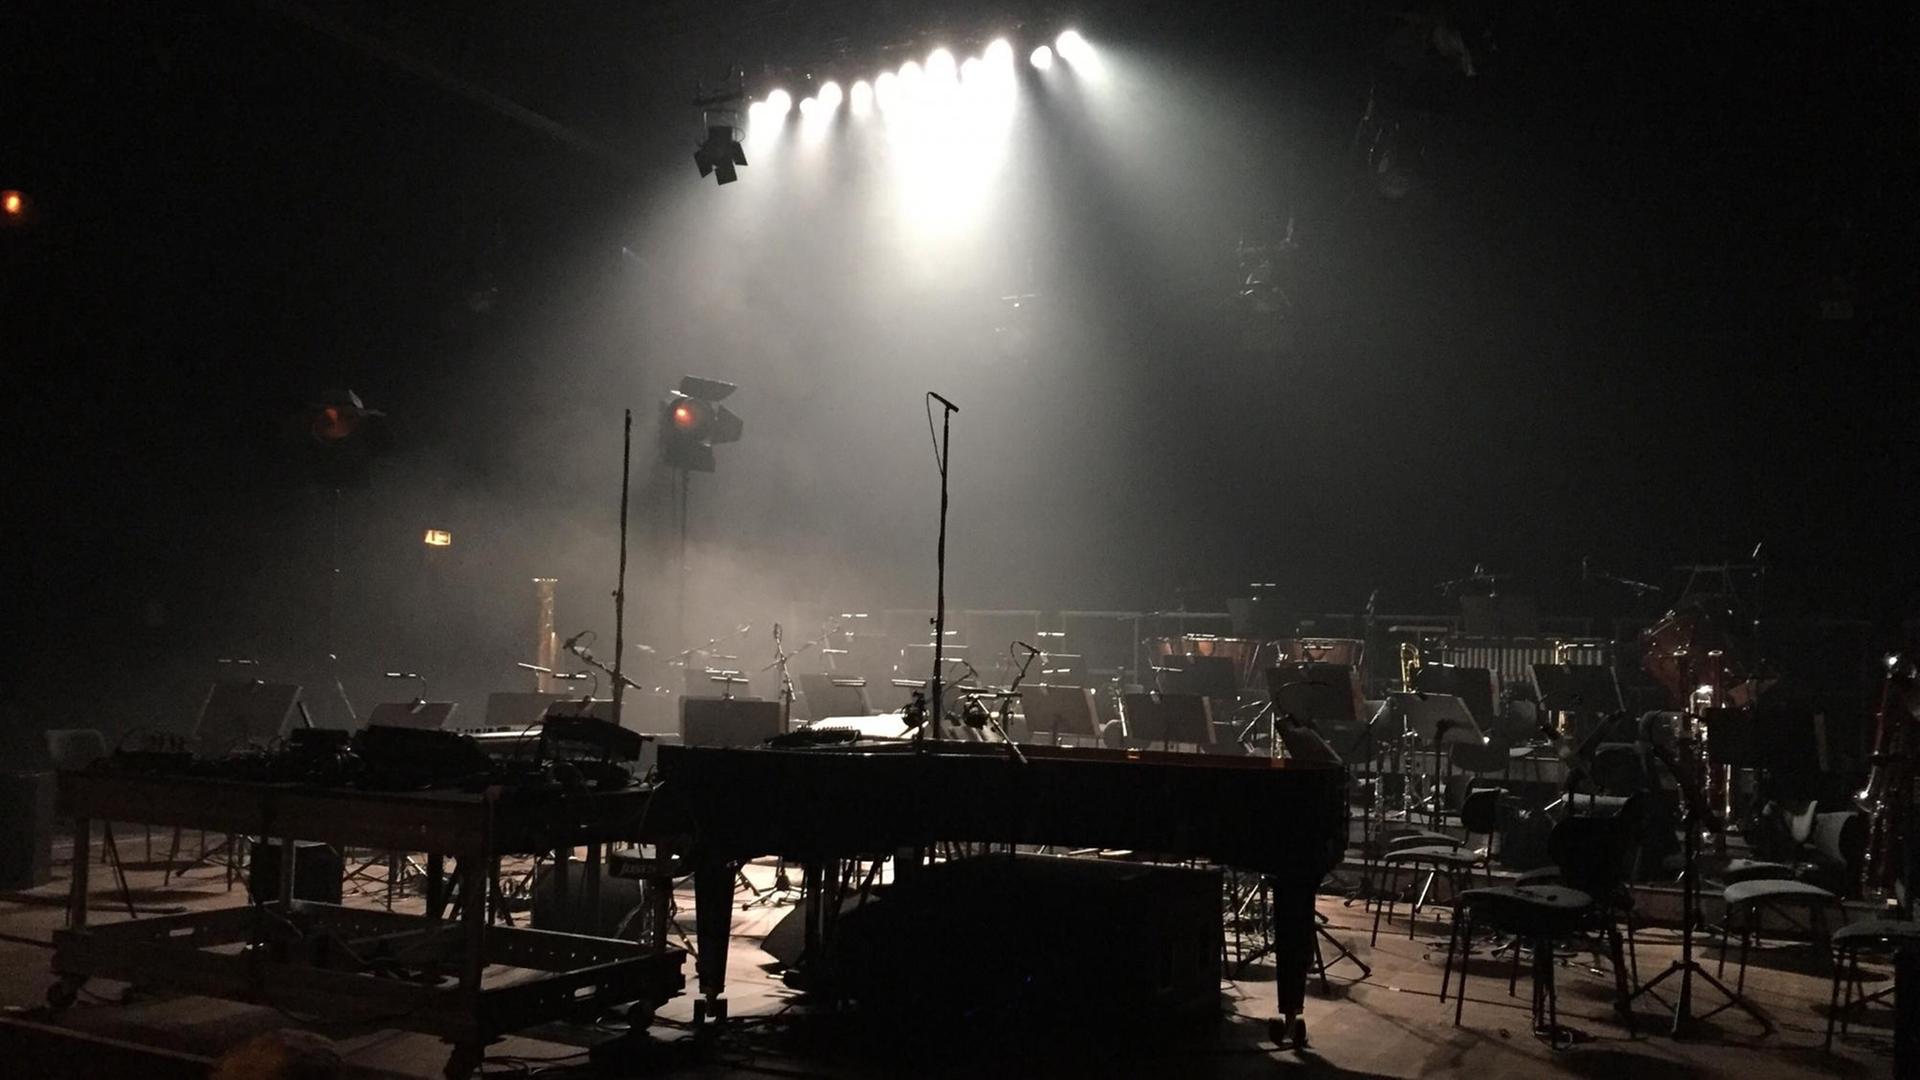 Ein Orchsteraufbau auf einer menschenleeren Bühne im Scheinwerferlicht. Stühle, ein Konzertflügel und andere Instrumente stehen bereit für ein Konzert.